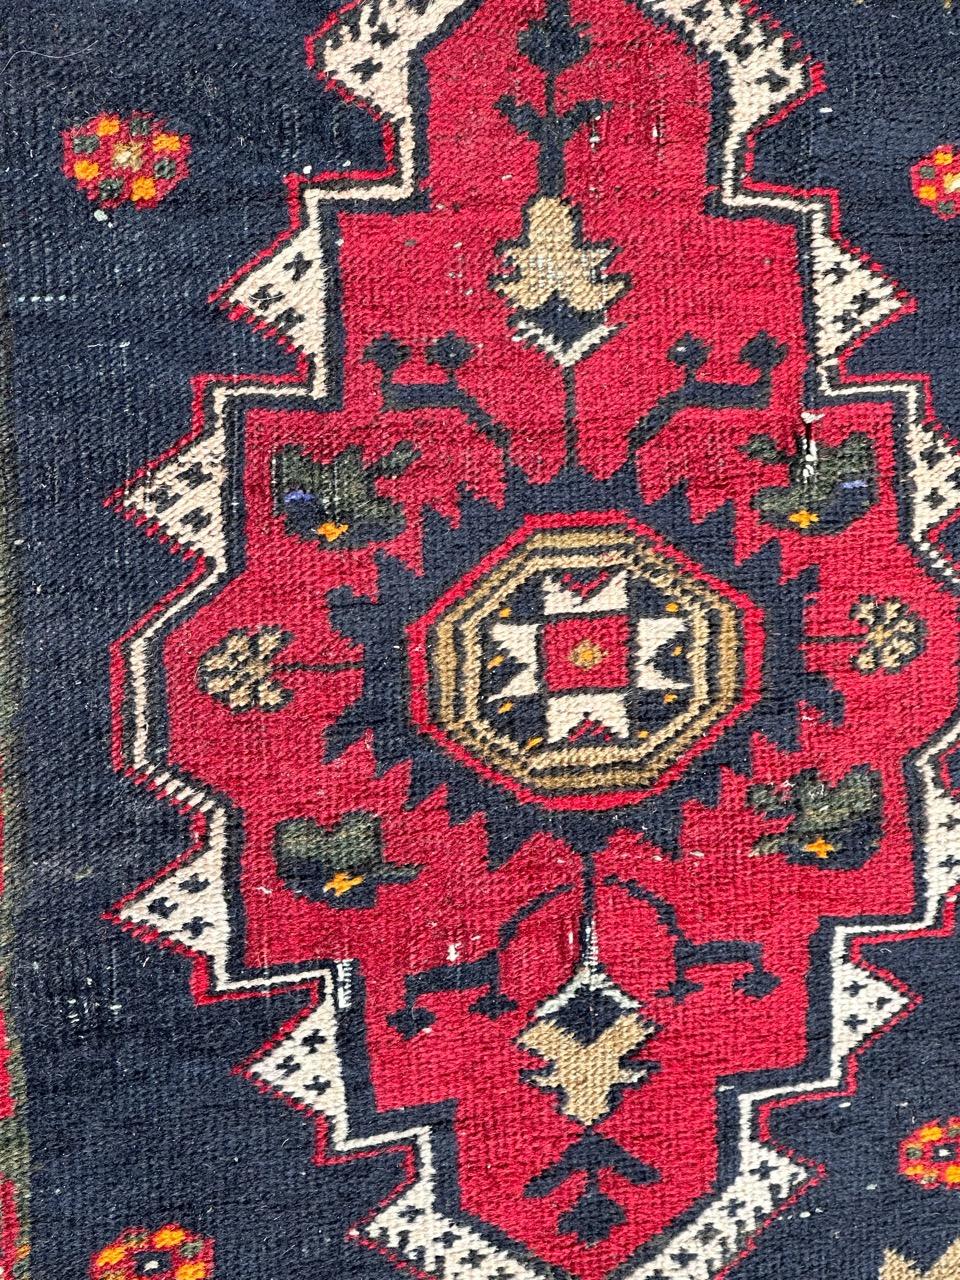 Hübscher türkischer Yastik-Teppich aus der Mitte des Jahrhunderts mit schönem geometrischem Muster und schönen Farben in Rot, Dunkelblau, Orange, Grün, Schwarz und Weiß, komplett handgeknüpft mit Wolle auf Baumwollbasis. Einige Abnutzungen aufgrund